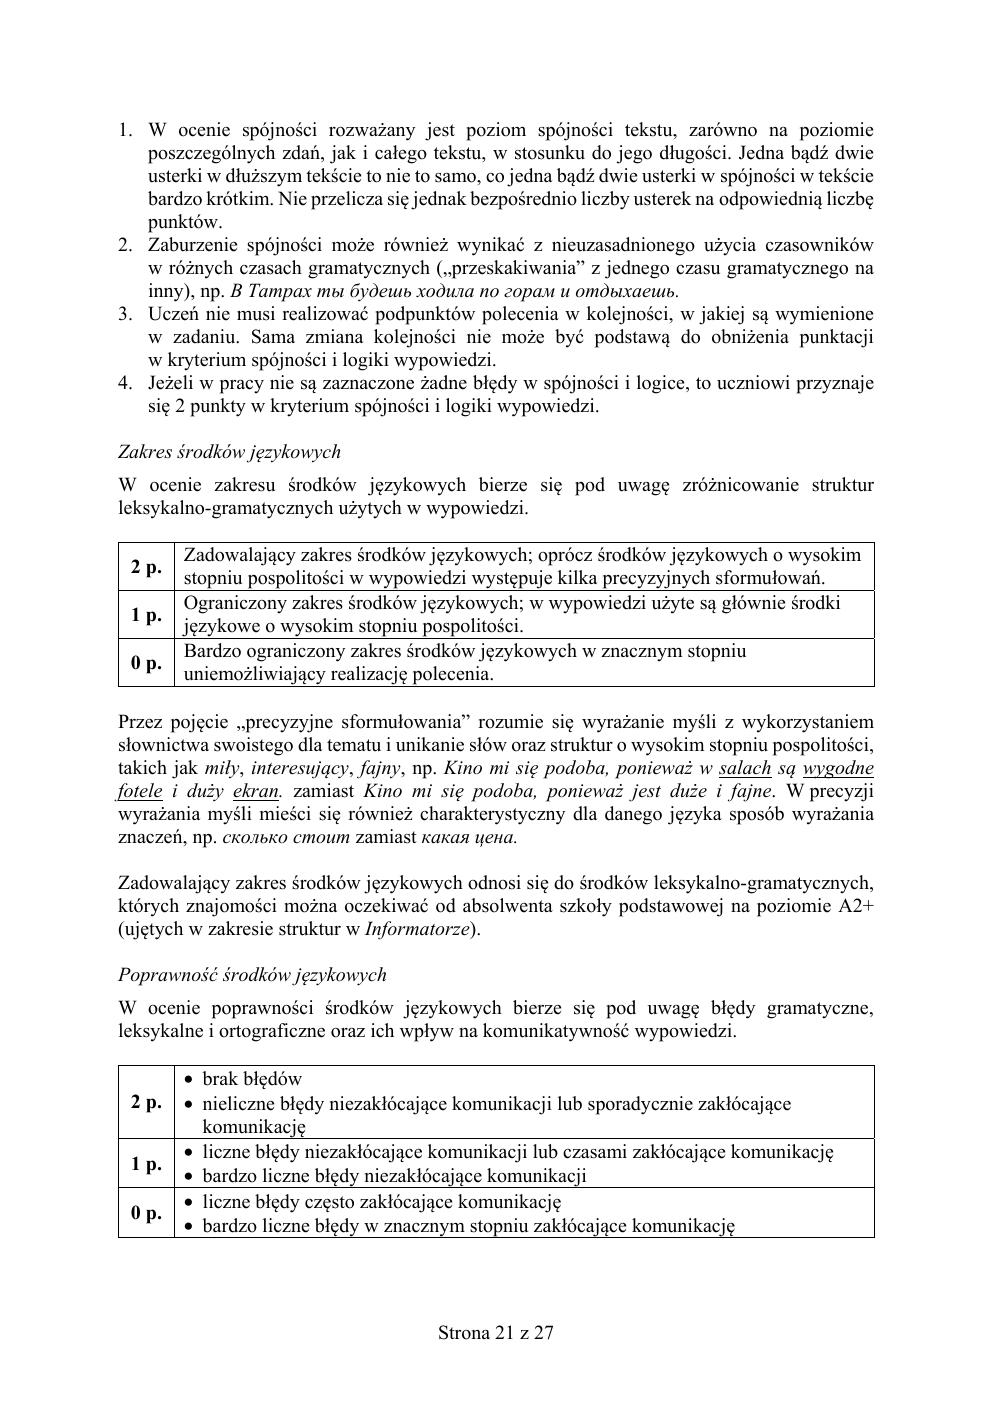 odpowiedzi - rosyjski - egzamin ósmoklasisty 2019-21